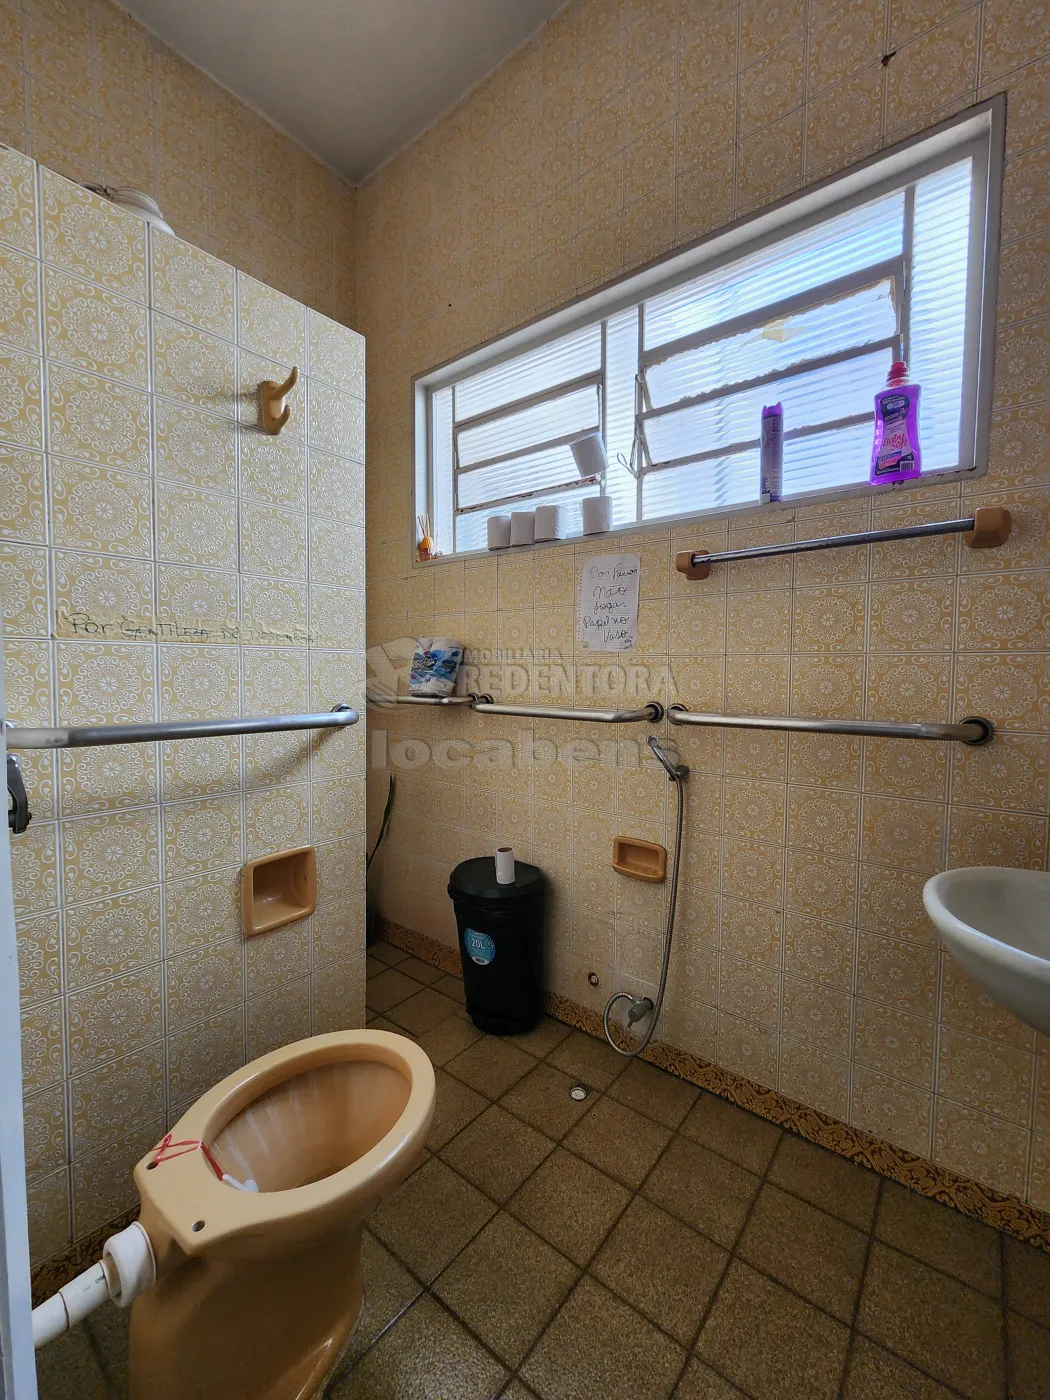 Alugar Casa / Padrão em São José do Rio Preto apenas R$ 2.500,00 - Foto 5